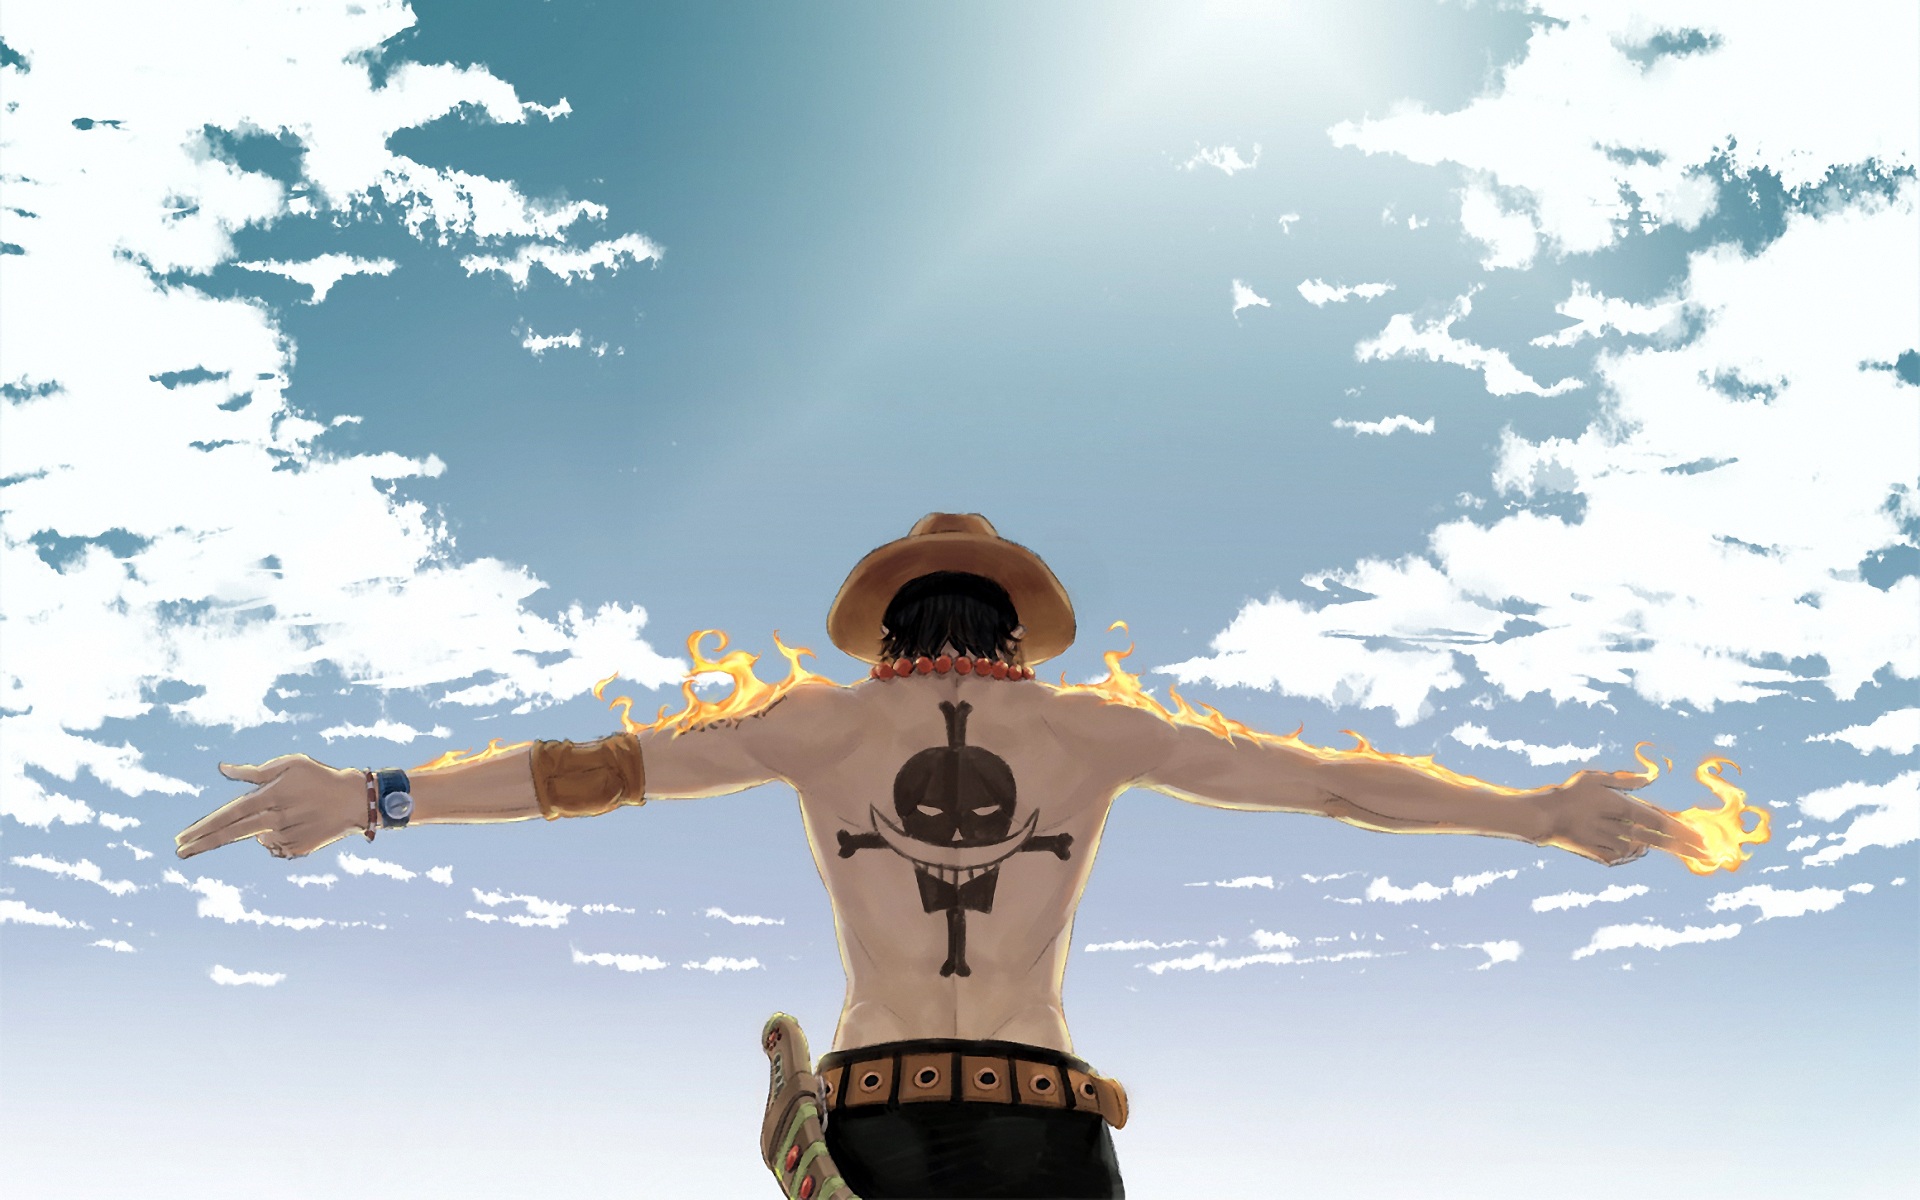 Hình nền One Piece 4K (Vua Hải Tặc) kinh điển cho anh em